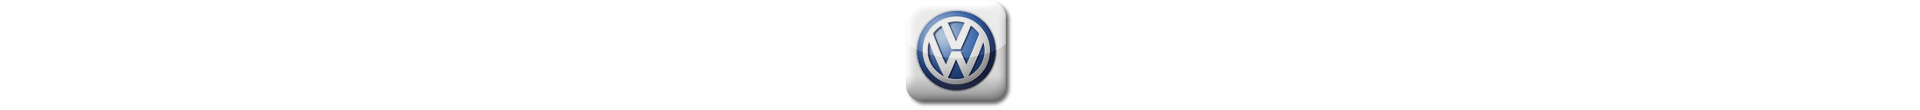 Boitier additionnel Volkswagen Diesel Evolussem